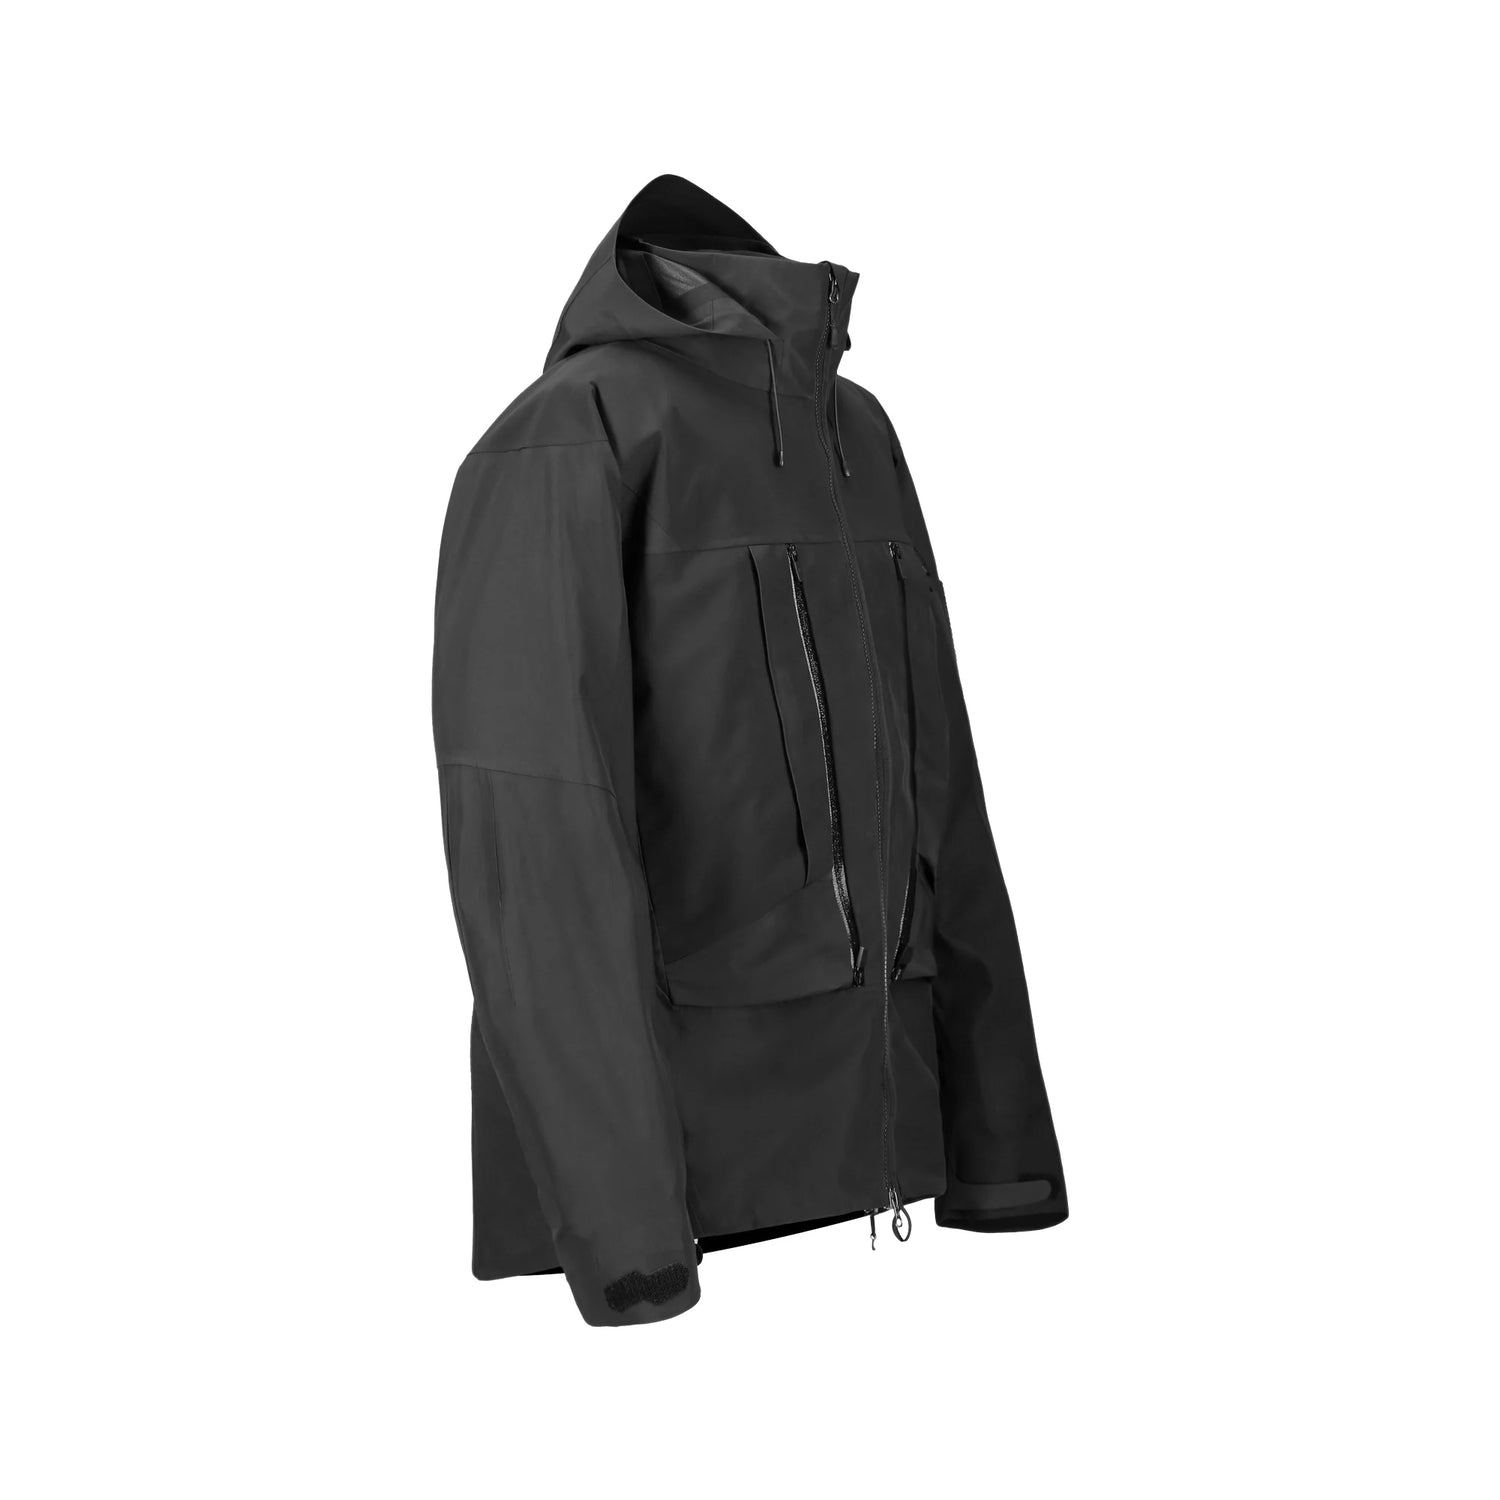 The 0107 Ski Down Techwear Jacket in Black Color